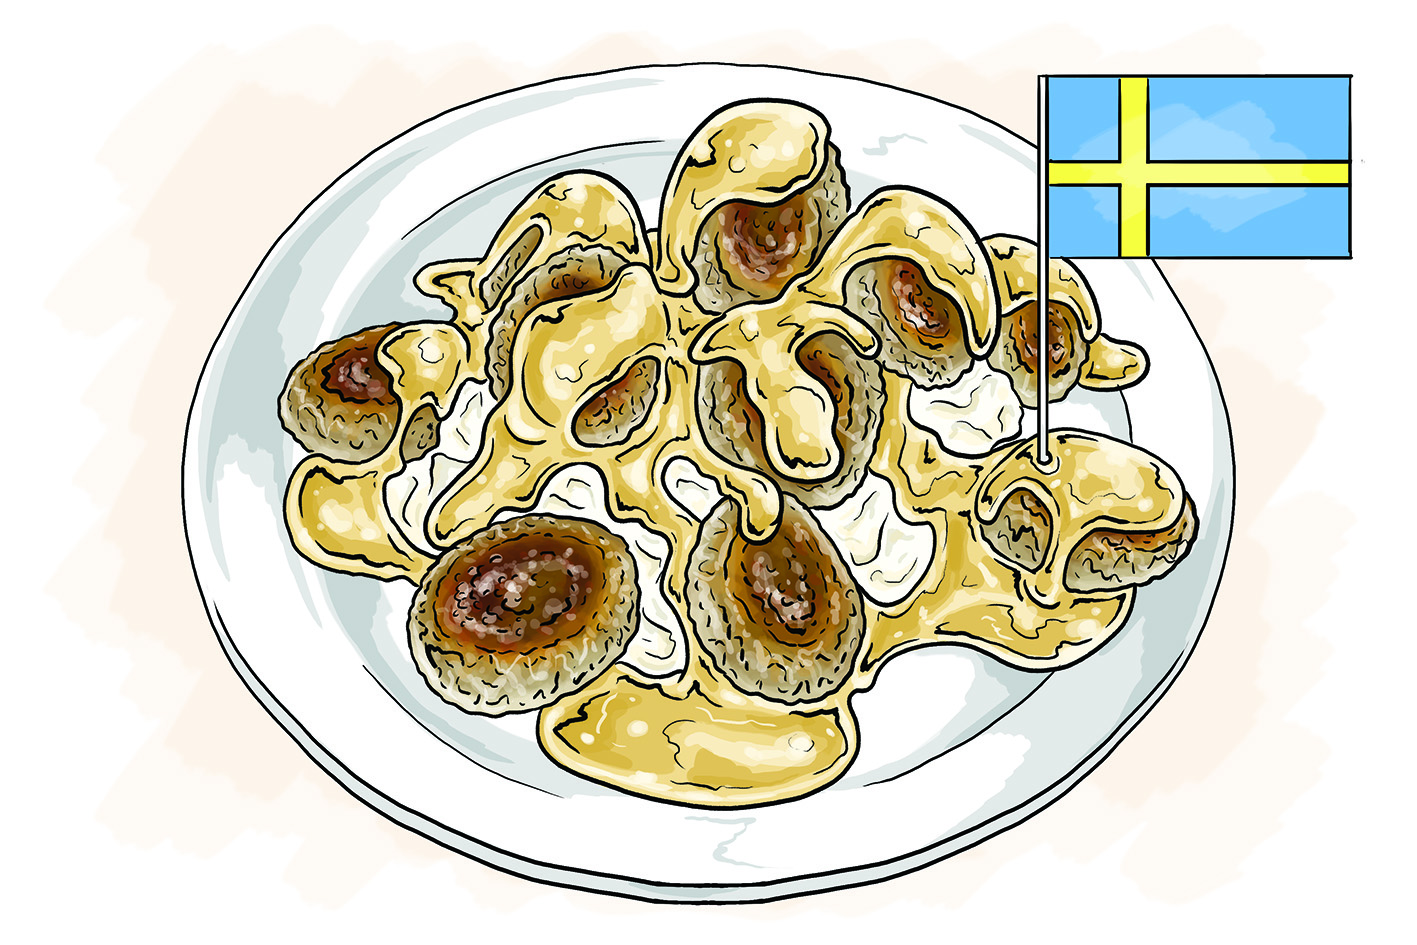 Svenskarnas intresse för matlagning ökar